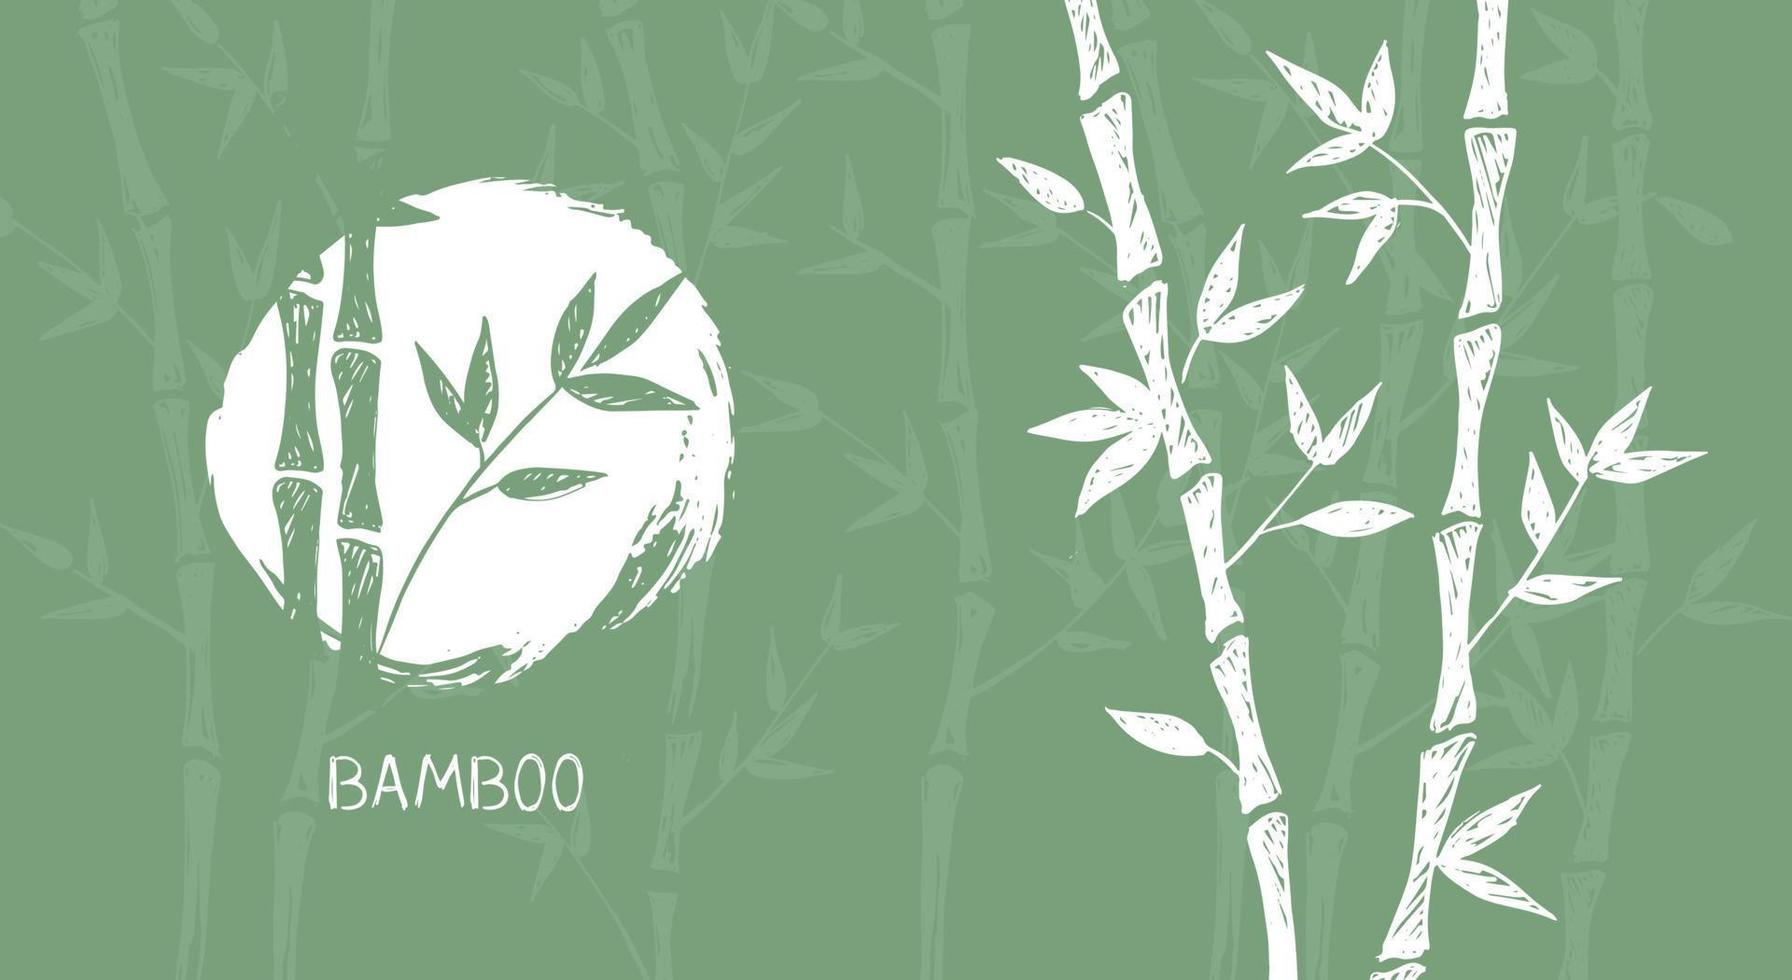 bambu träd. handritad stil. vektor illustrationer.